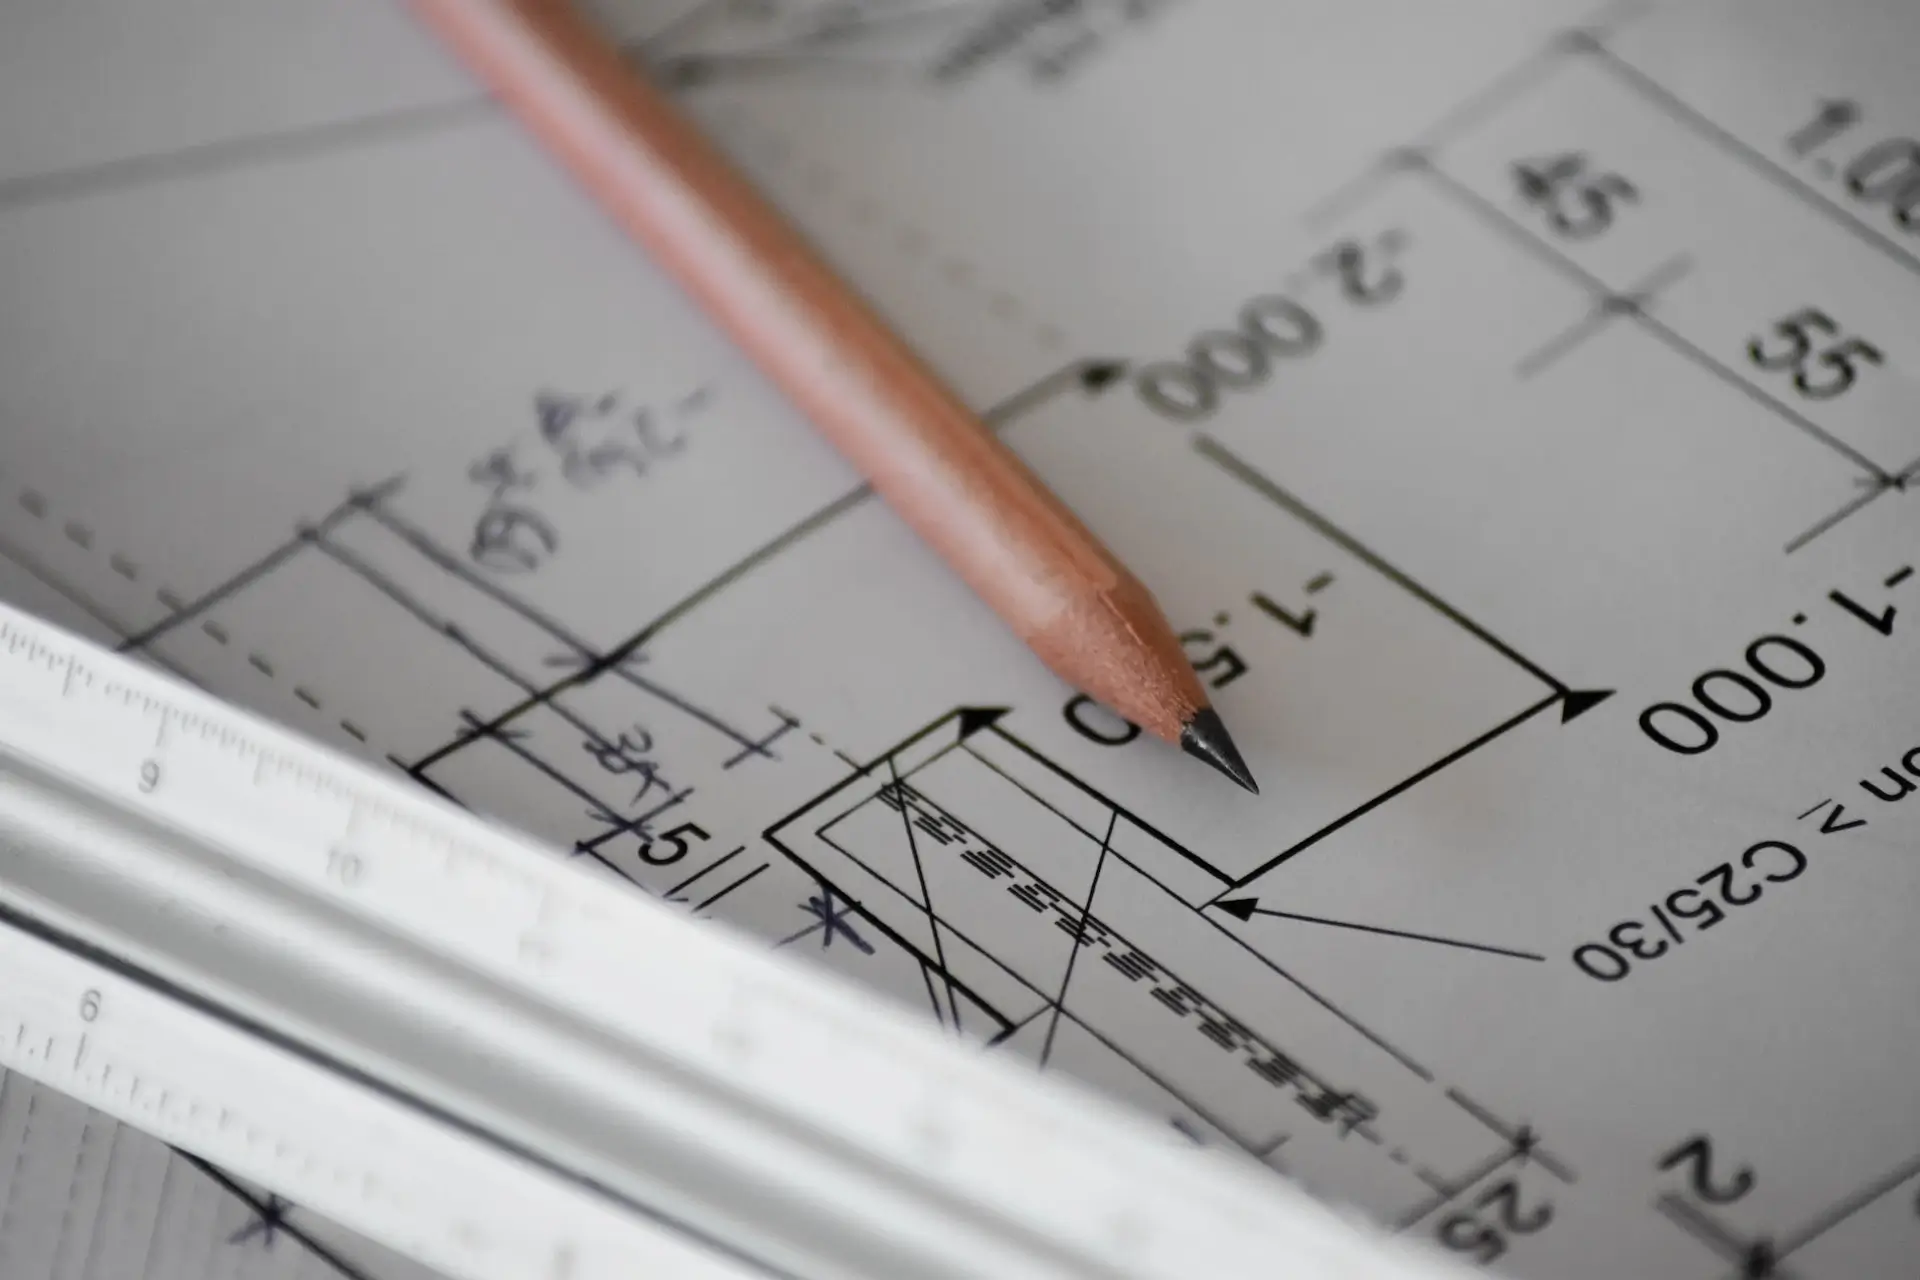 Plan architektoniczny zawierający szczegółowy rysunek ołówkiem z pomiarami i notatkami projektowymi, wraz z metalową linijką do skalowania.